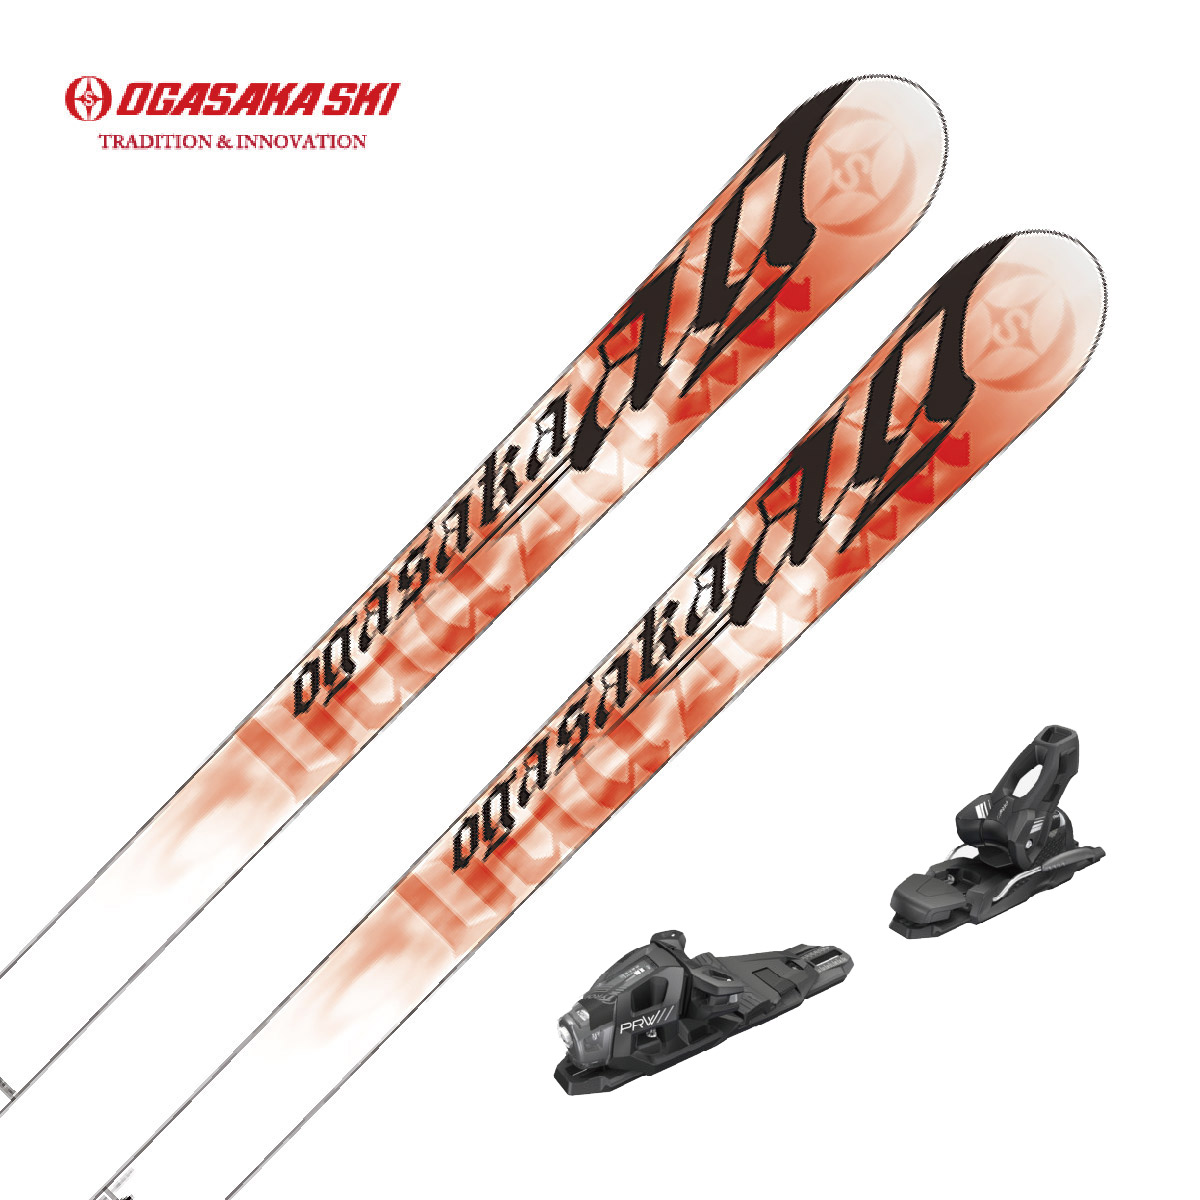 滑雪板- 滑雪用品店- 日本品牌滑雪裝備和滑雪服飾的頂級零售商